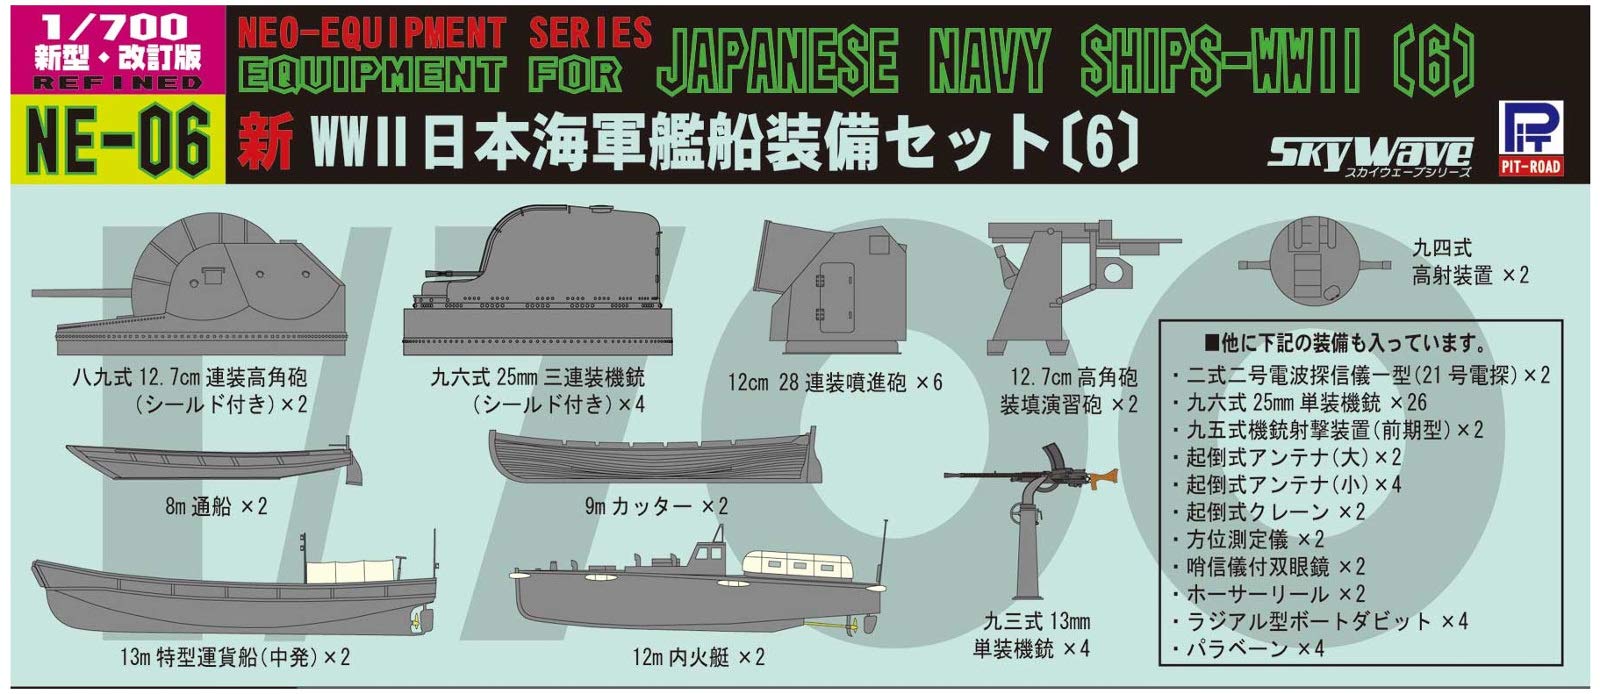 PIT-ROAD Skywave Ne-06 Ausrüstung für 6 Schiffe der japanischen Marine im Maßstab 1:700 aus dem Zweiten Weltkrieg